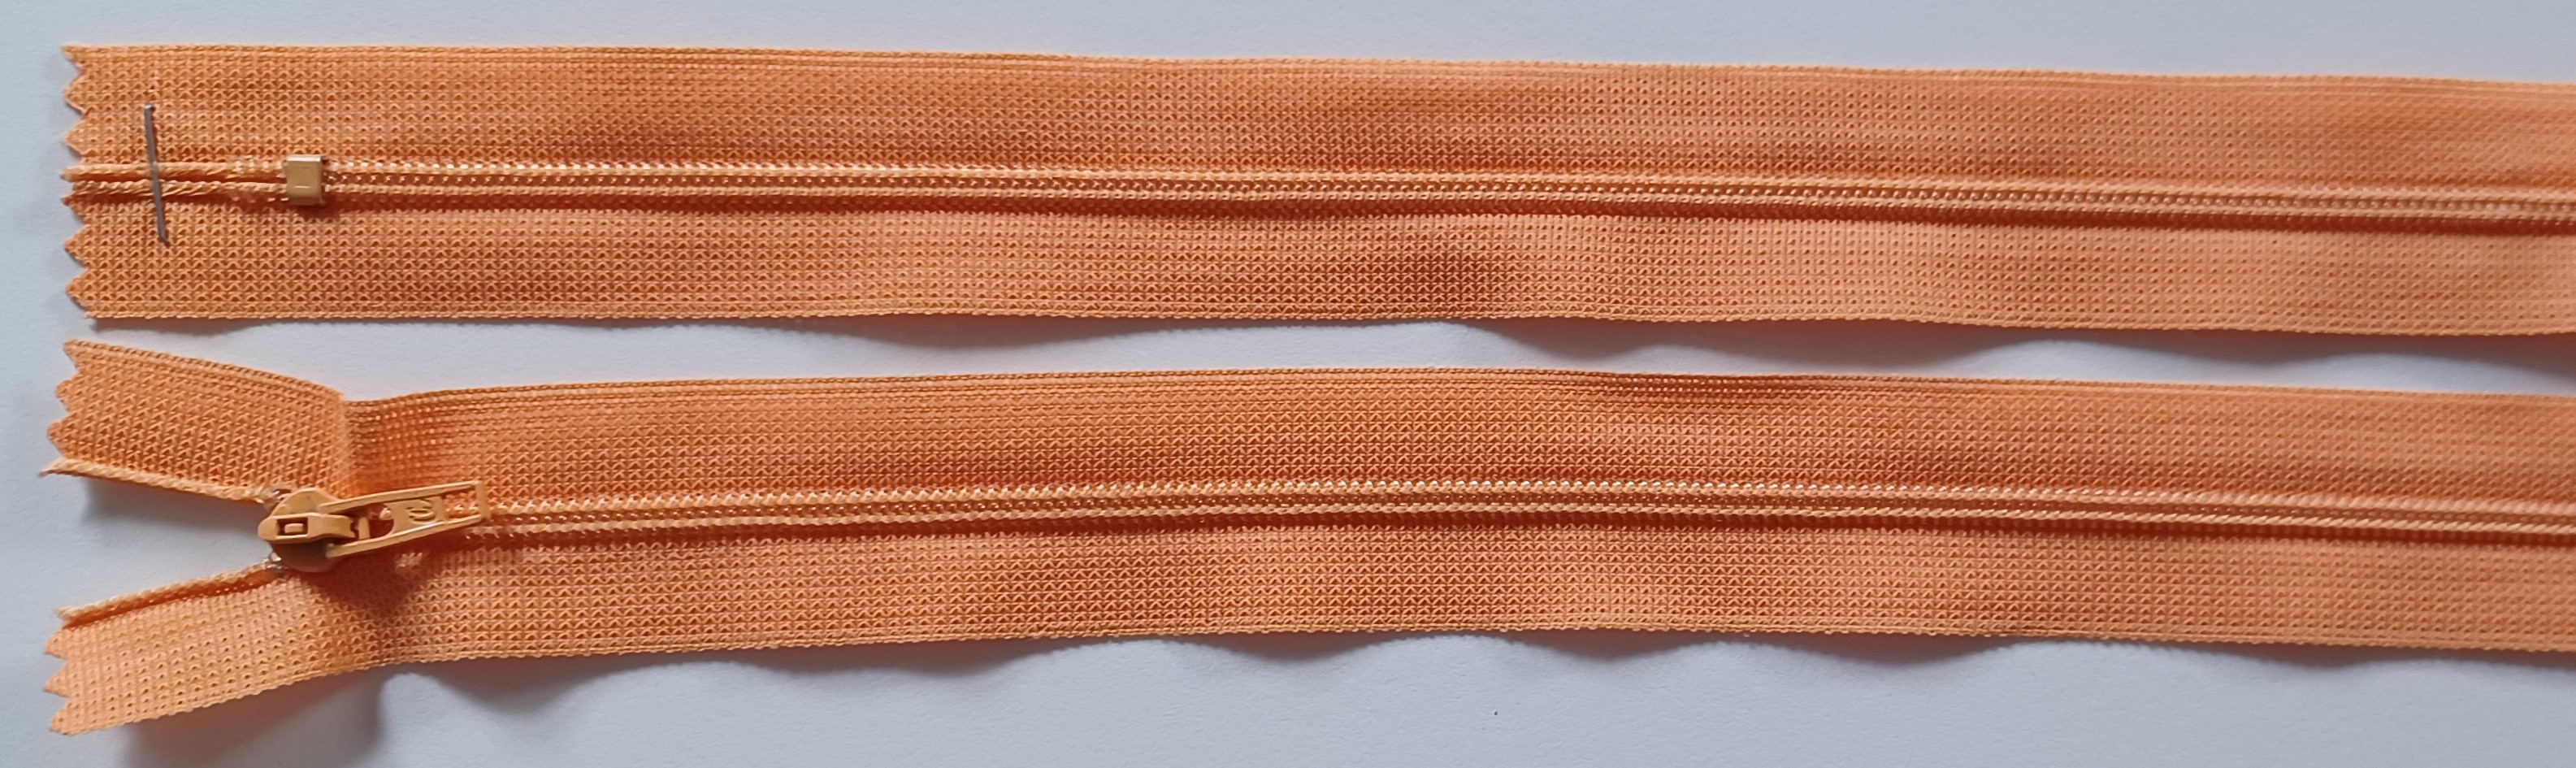 Coats & Clark 8.5" Peach Nylon Coil Zipper